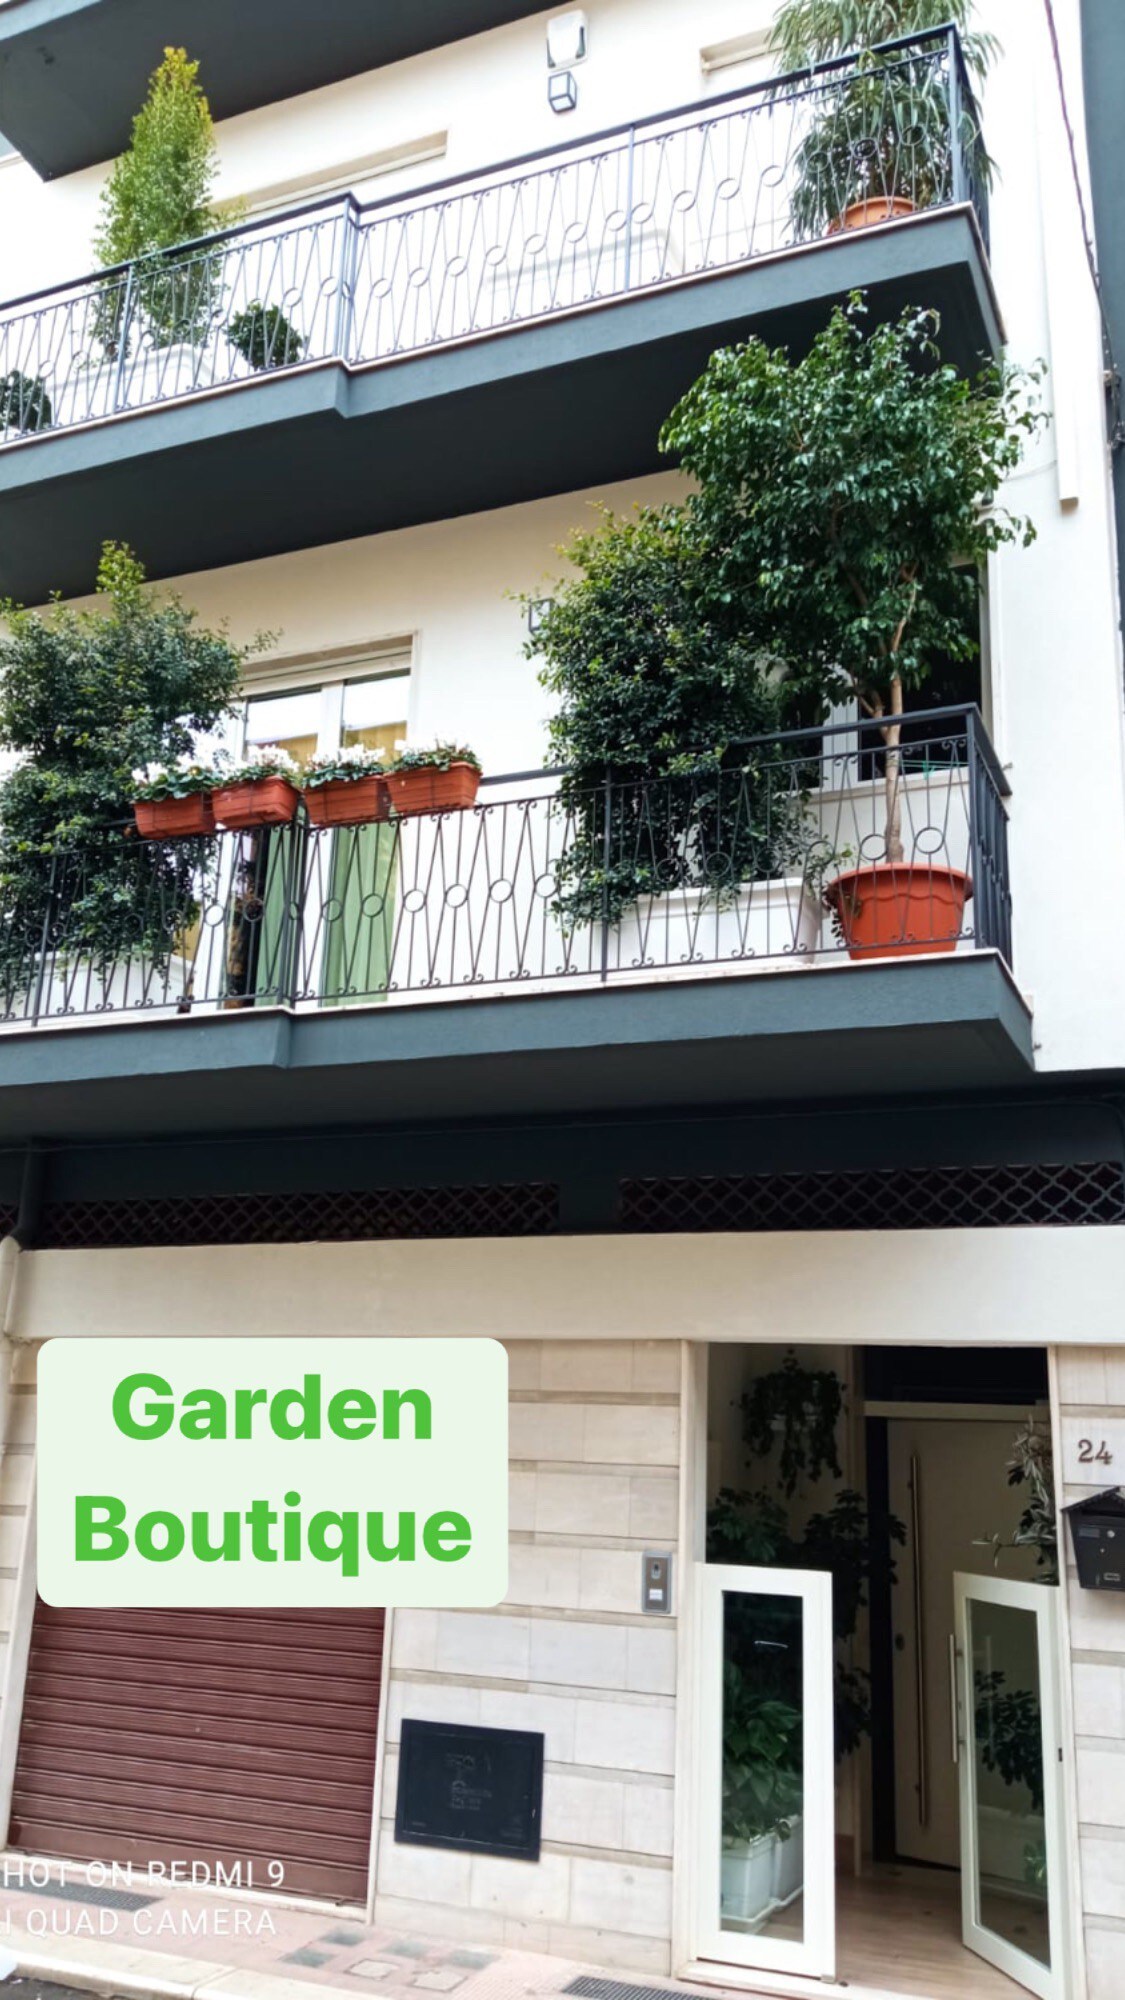 Garden boutique